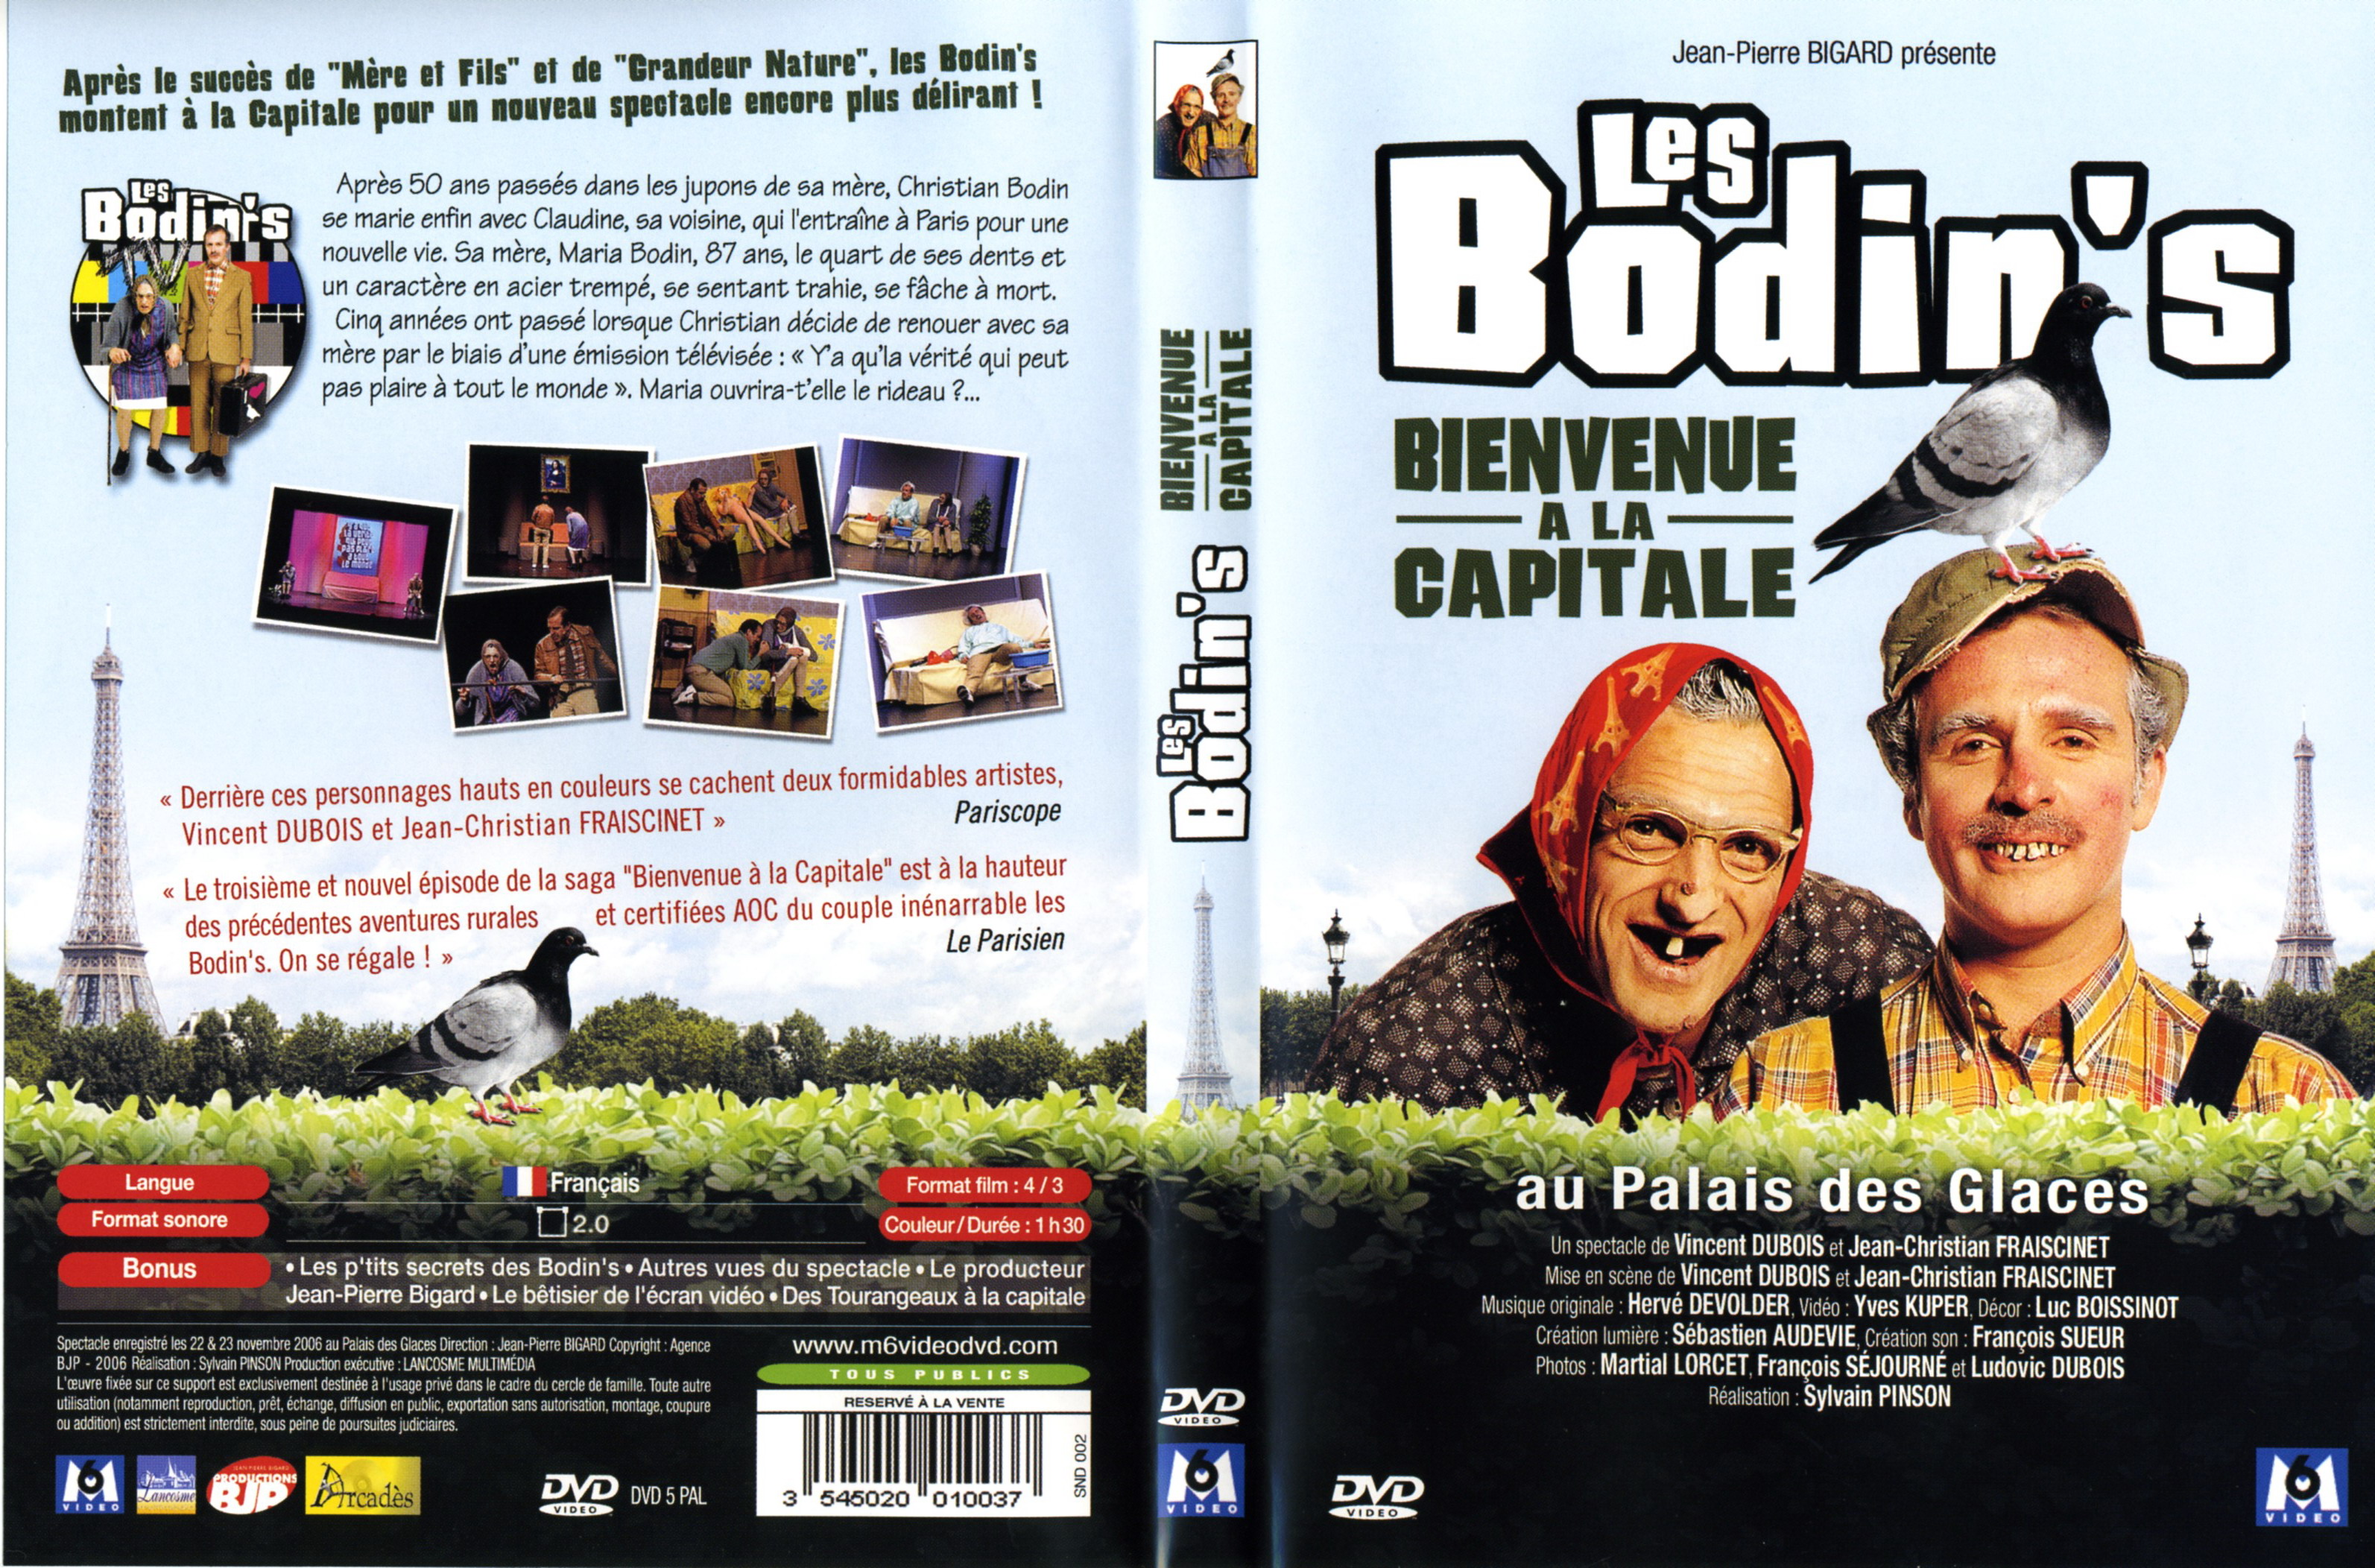 Jaquette DVD Les Bodin